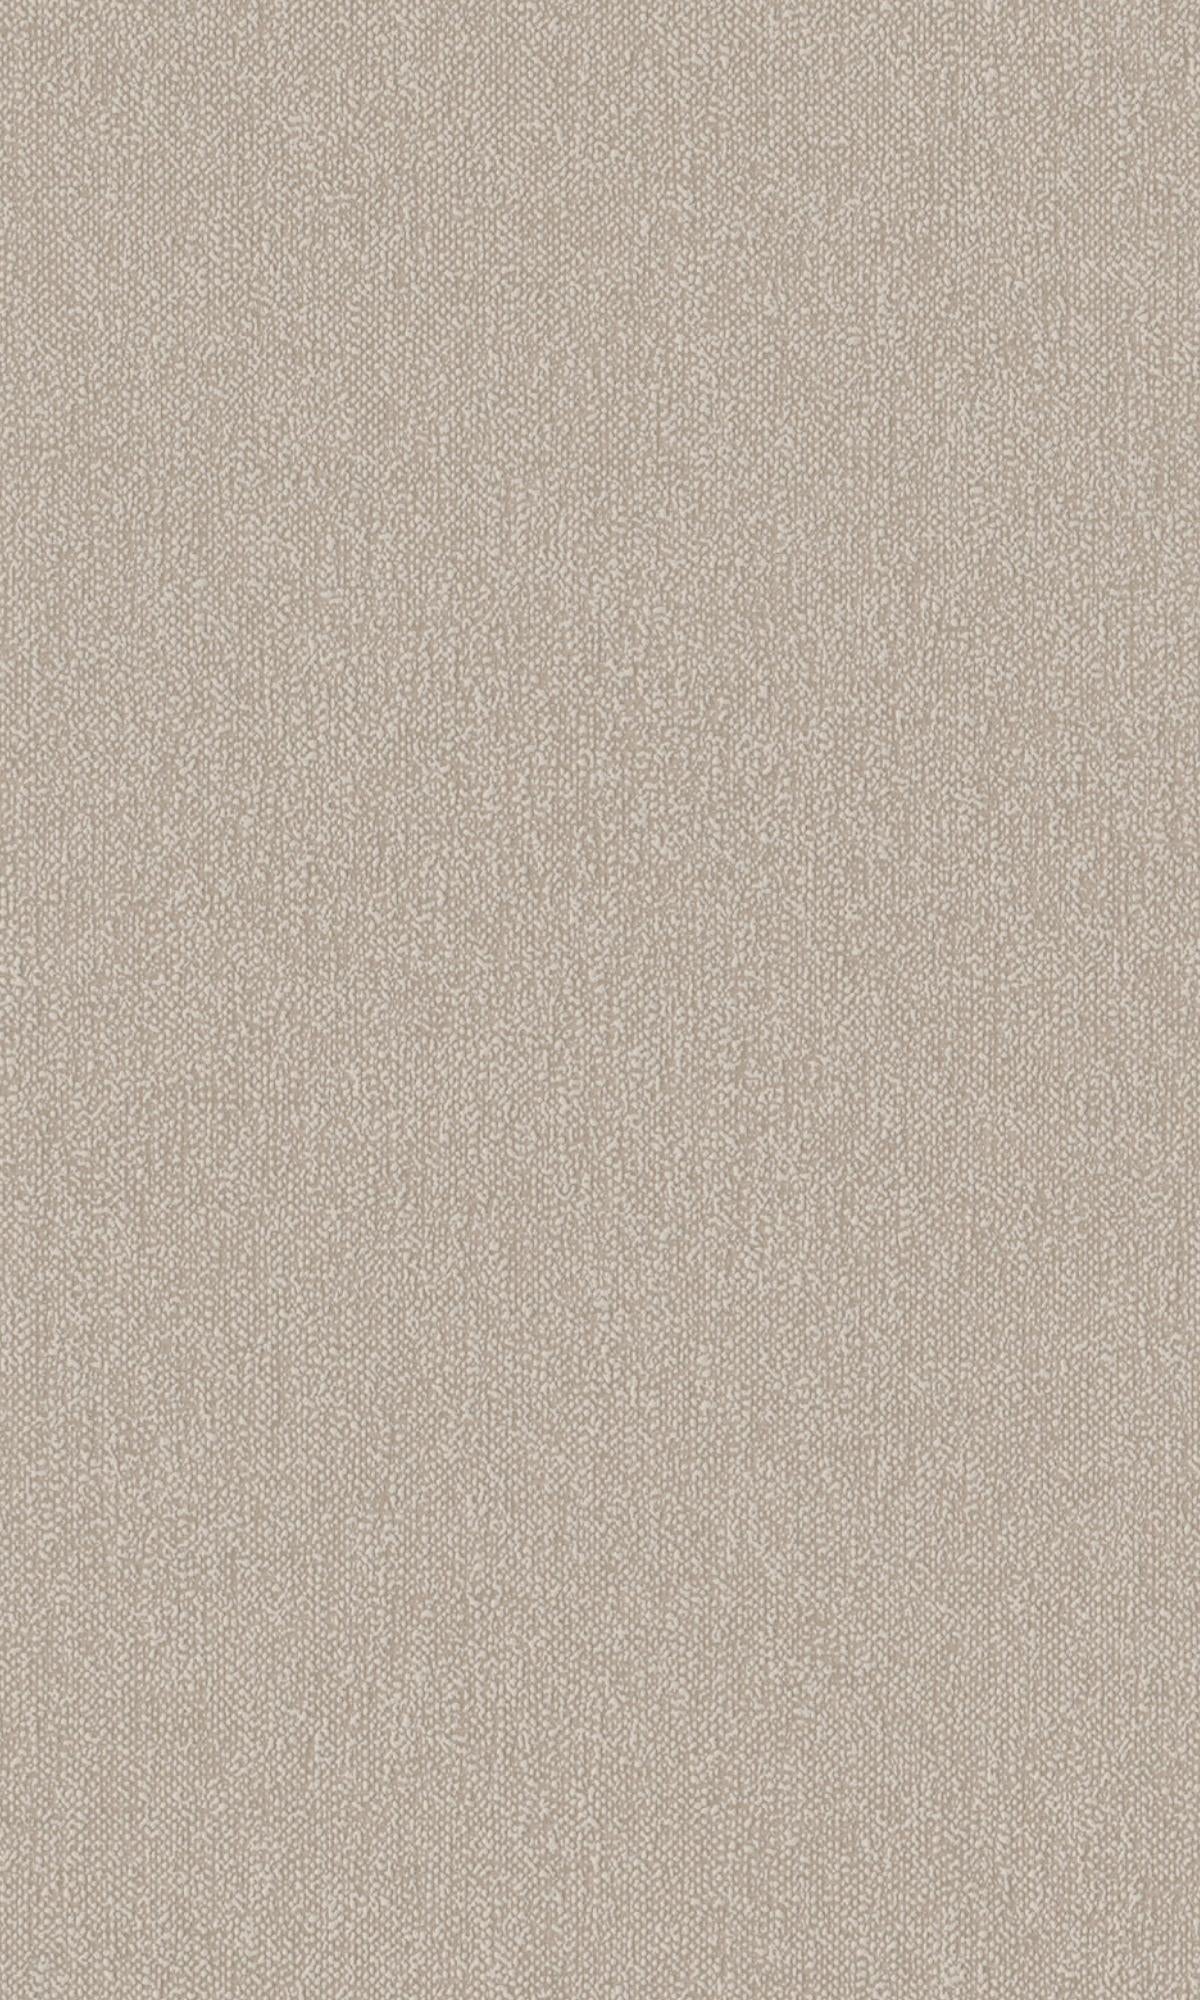 Light Cream Plain Textured Wallpaper R7806